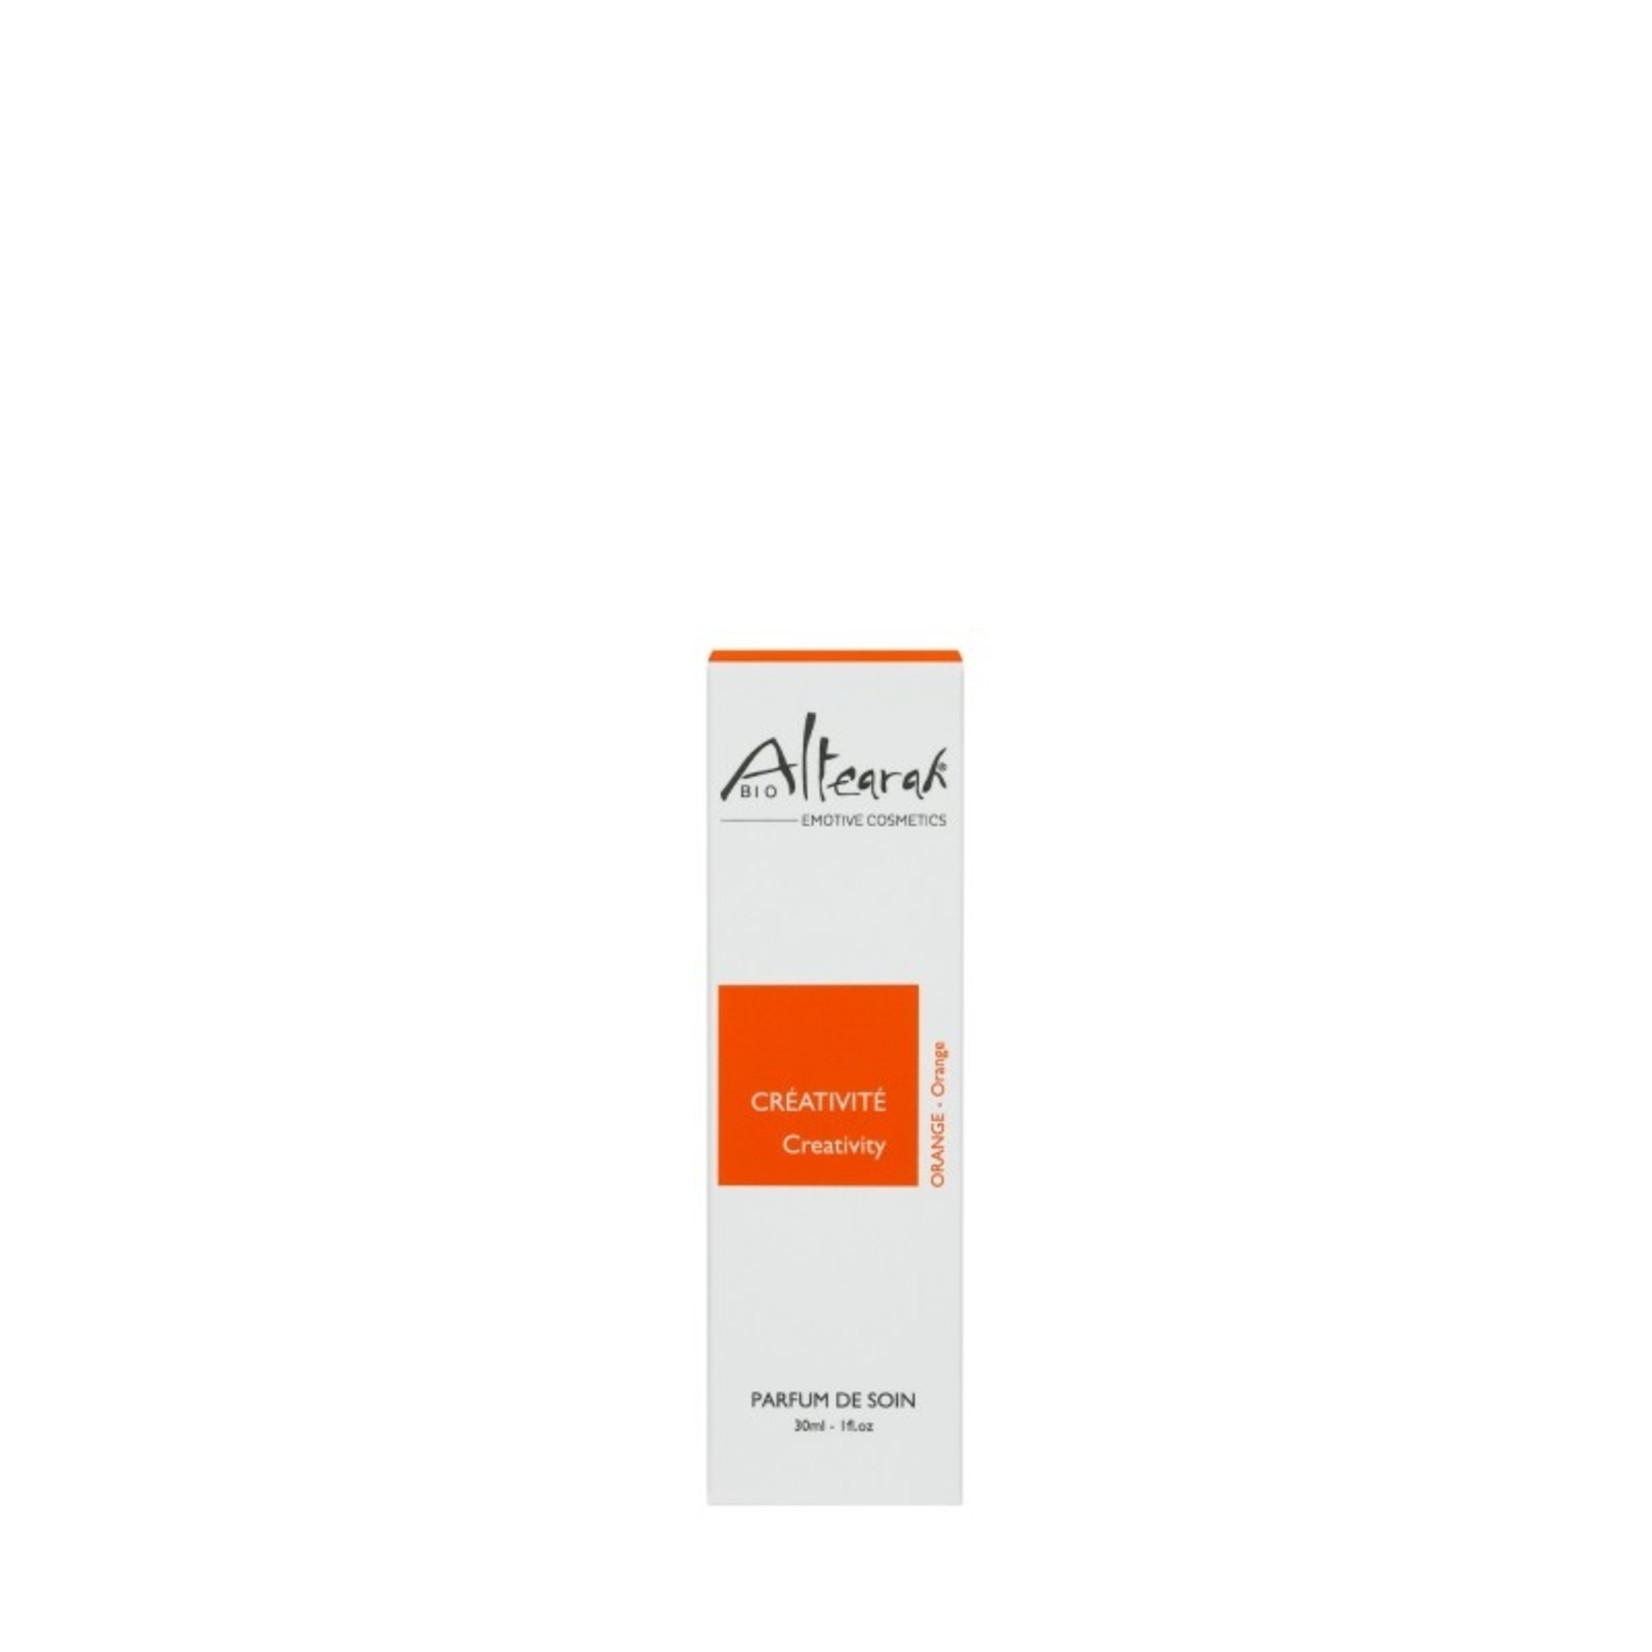 Altearah Care parfume - (Orange) Creativity